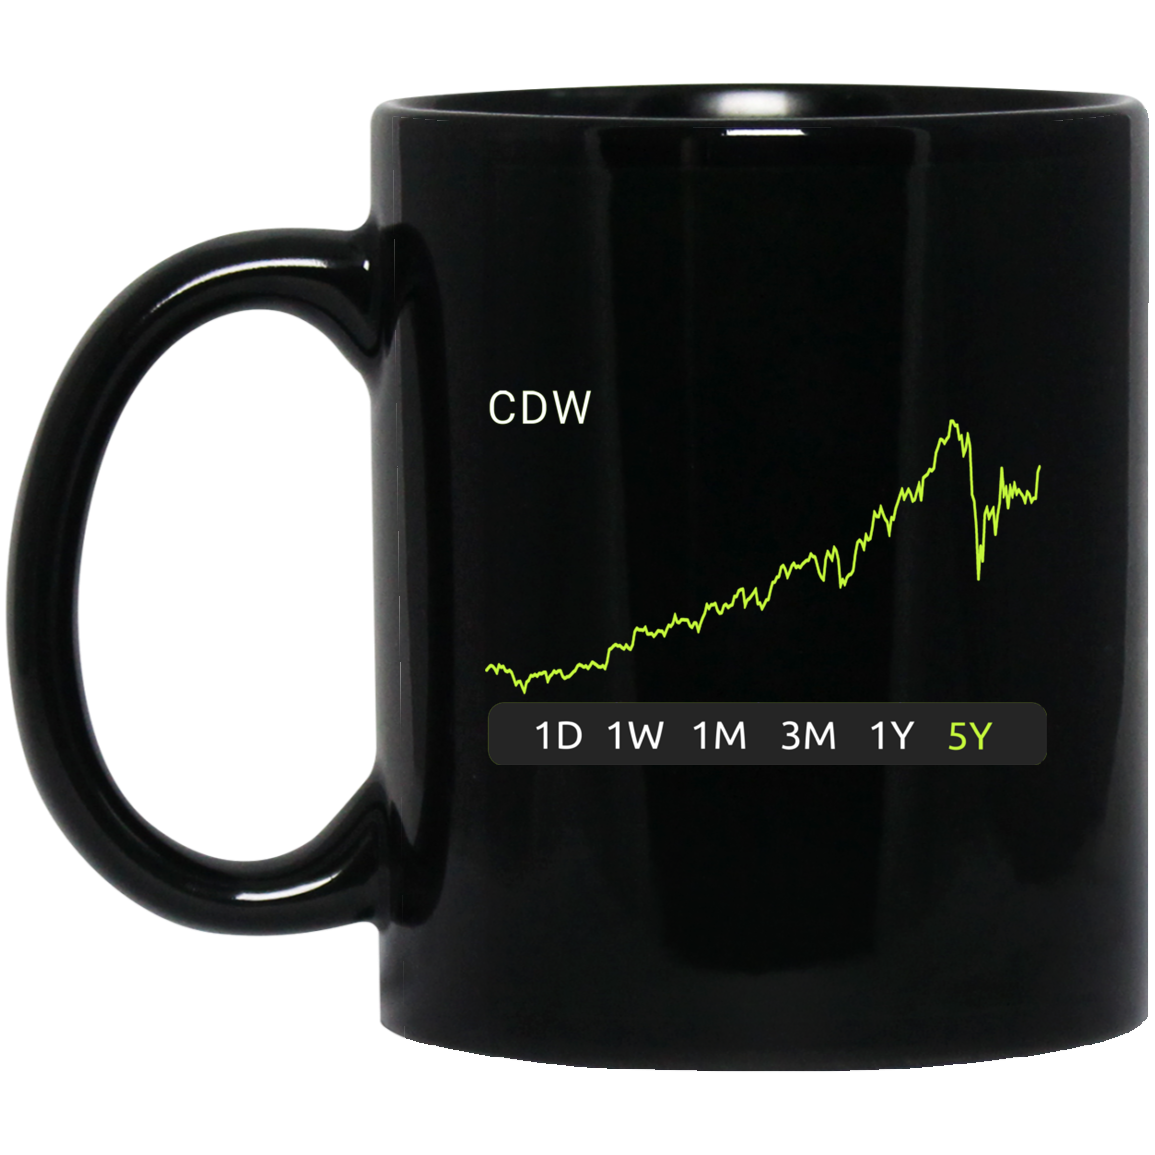 CDW Stock 5y Mug